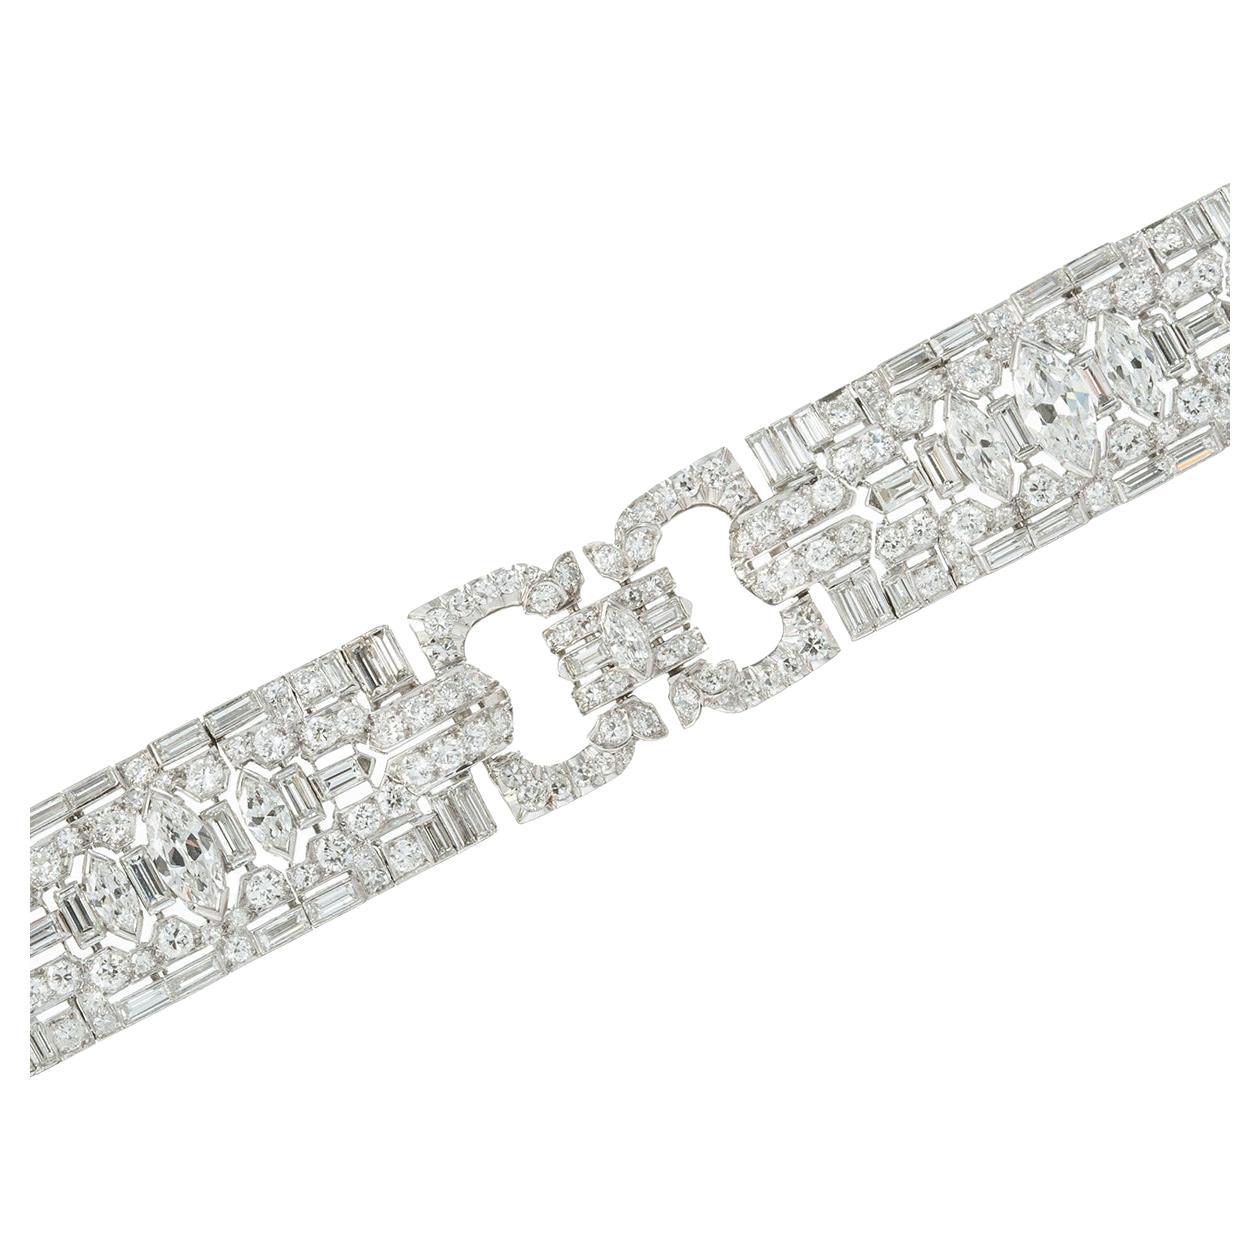 Sehr feines Art-Déco-Gliederarmband aus Diamanten, besetzt mit Diamanten im Marquise-, Baguette- und Rundschliff.  Handgefertigt in Platin.  Diamanten mit einem Gesamtgewicht von etwa 7,50 Karat (die drei größten zentralen marquiseförmigen Diamanten